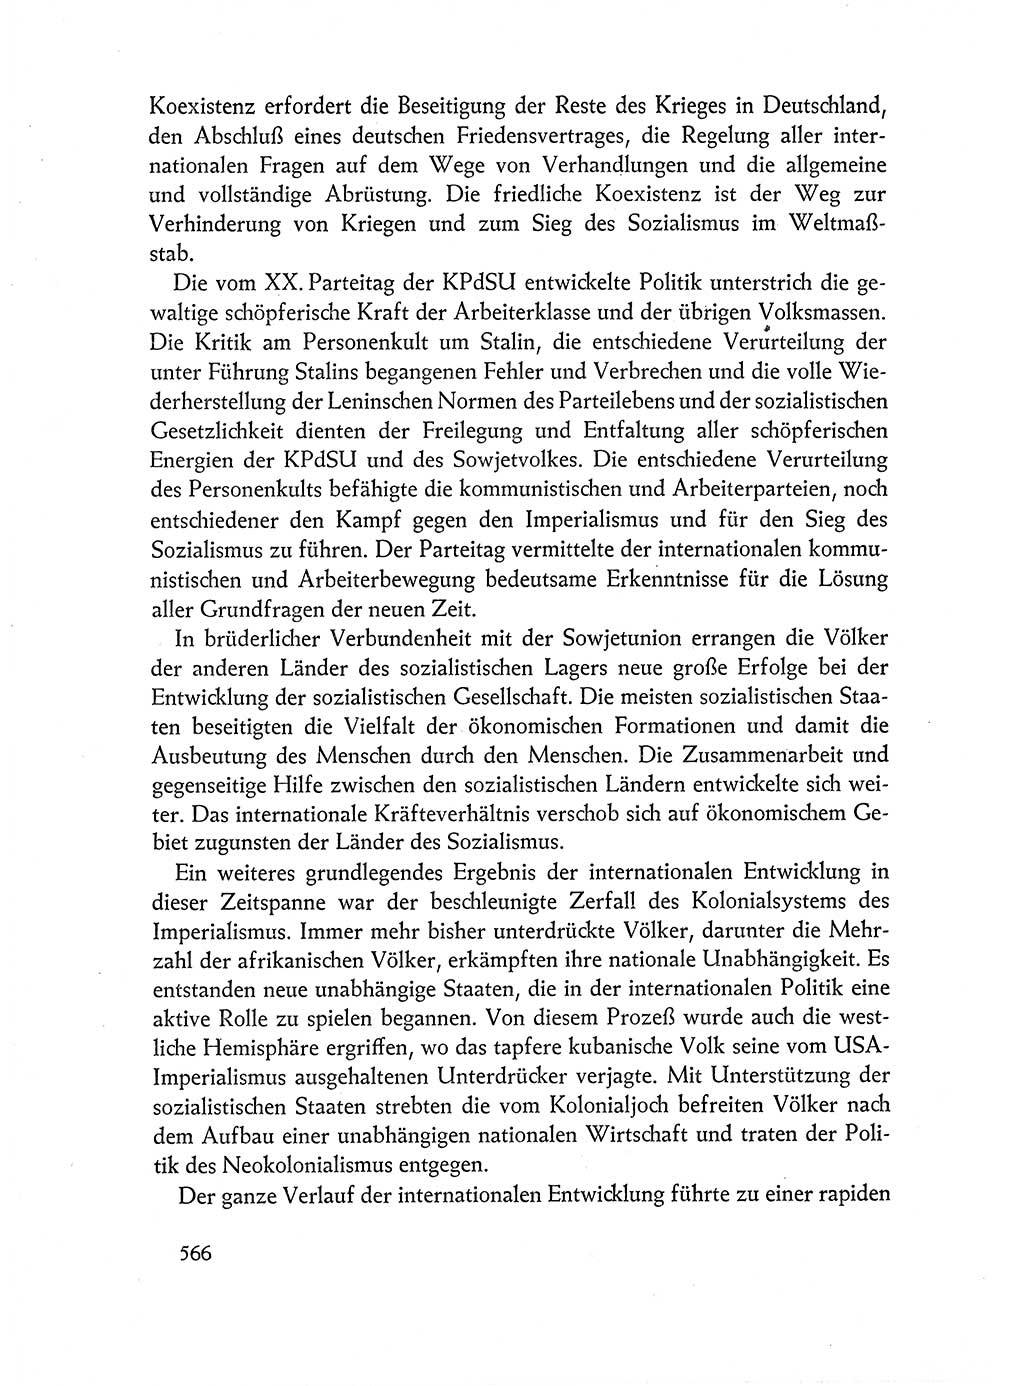 Dokumente der Sozialistischen Einheitspartei Deutschlands (SED) [Deutsche Demokratische Republik (DDR)] 1962-1963, Seite 566 (Dok. SED DDR 1962-1963, S. 566)